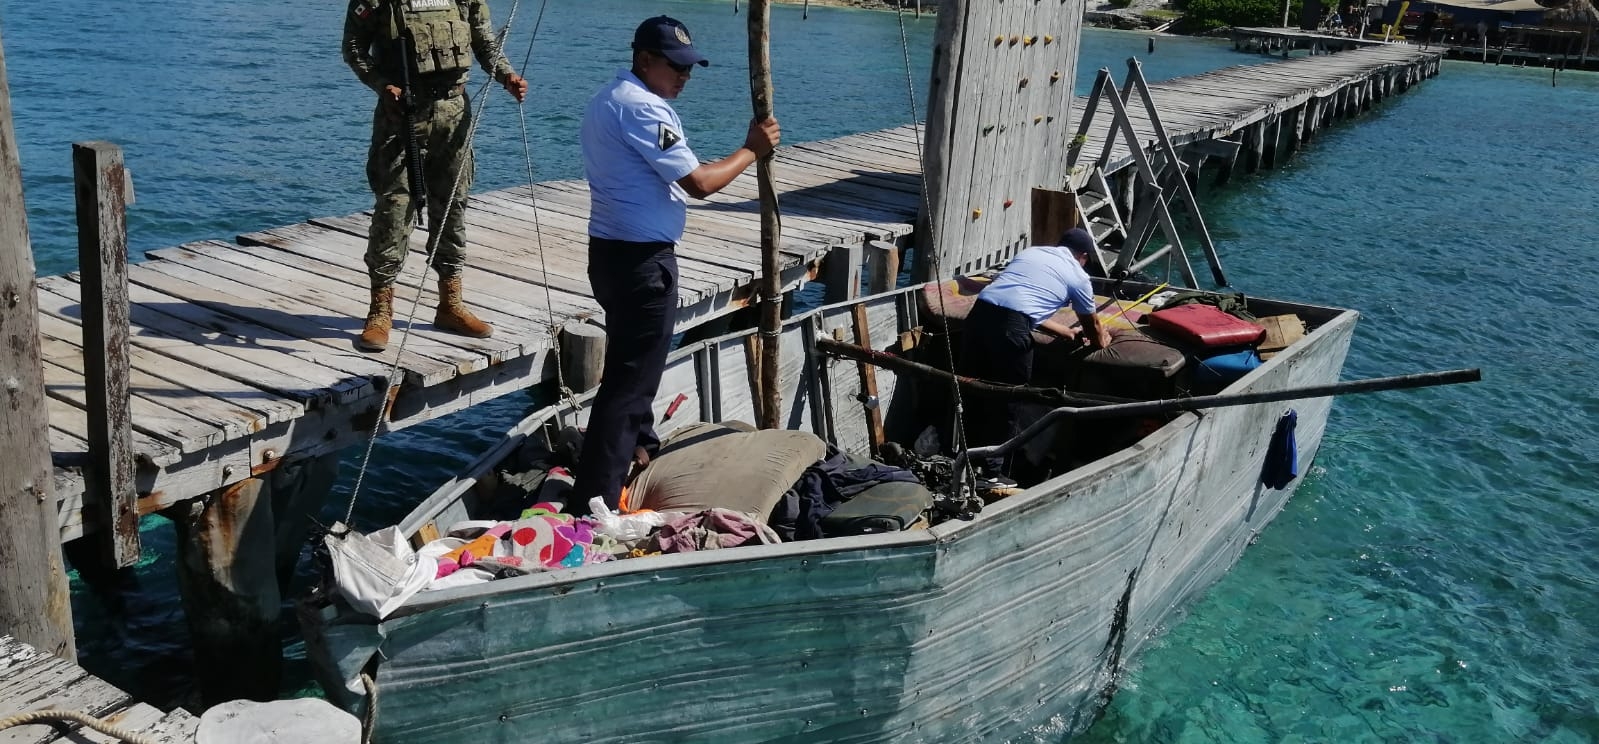 Hallan embarcación 'hechiza' en el muelle de un hotel en Isla Mujeres